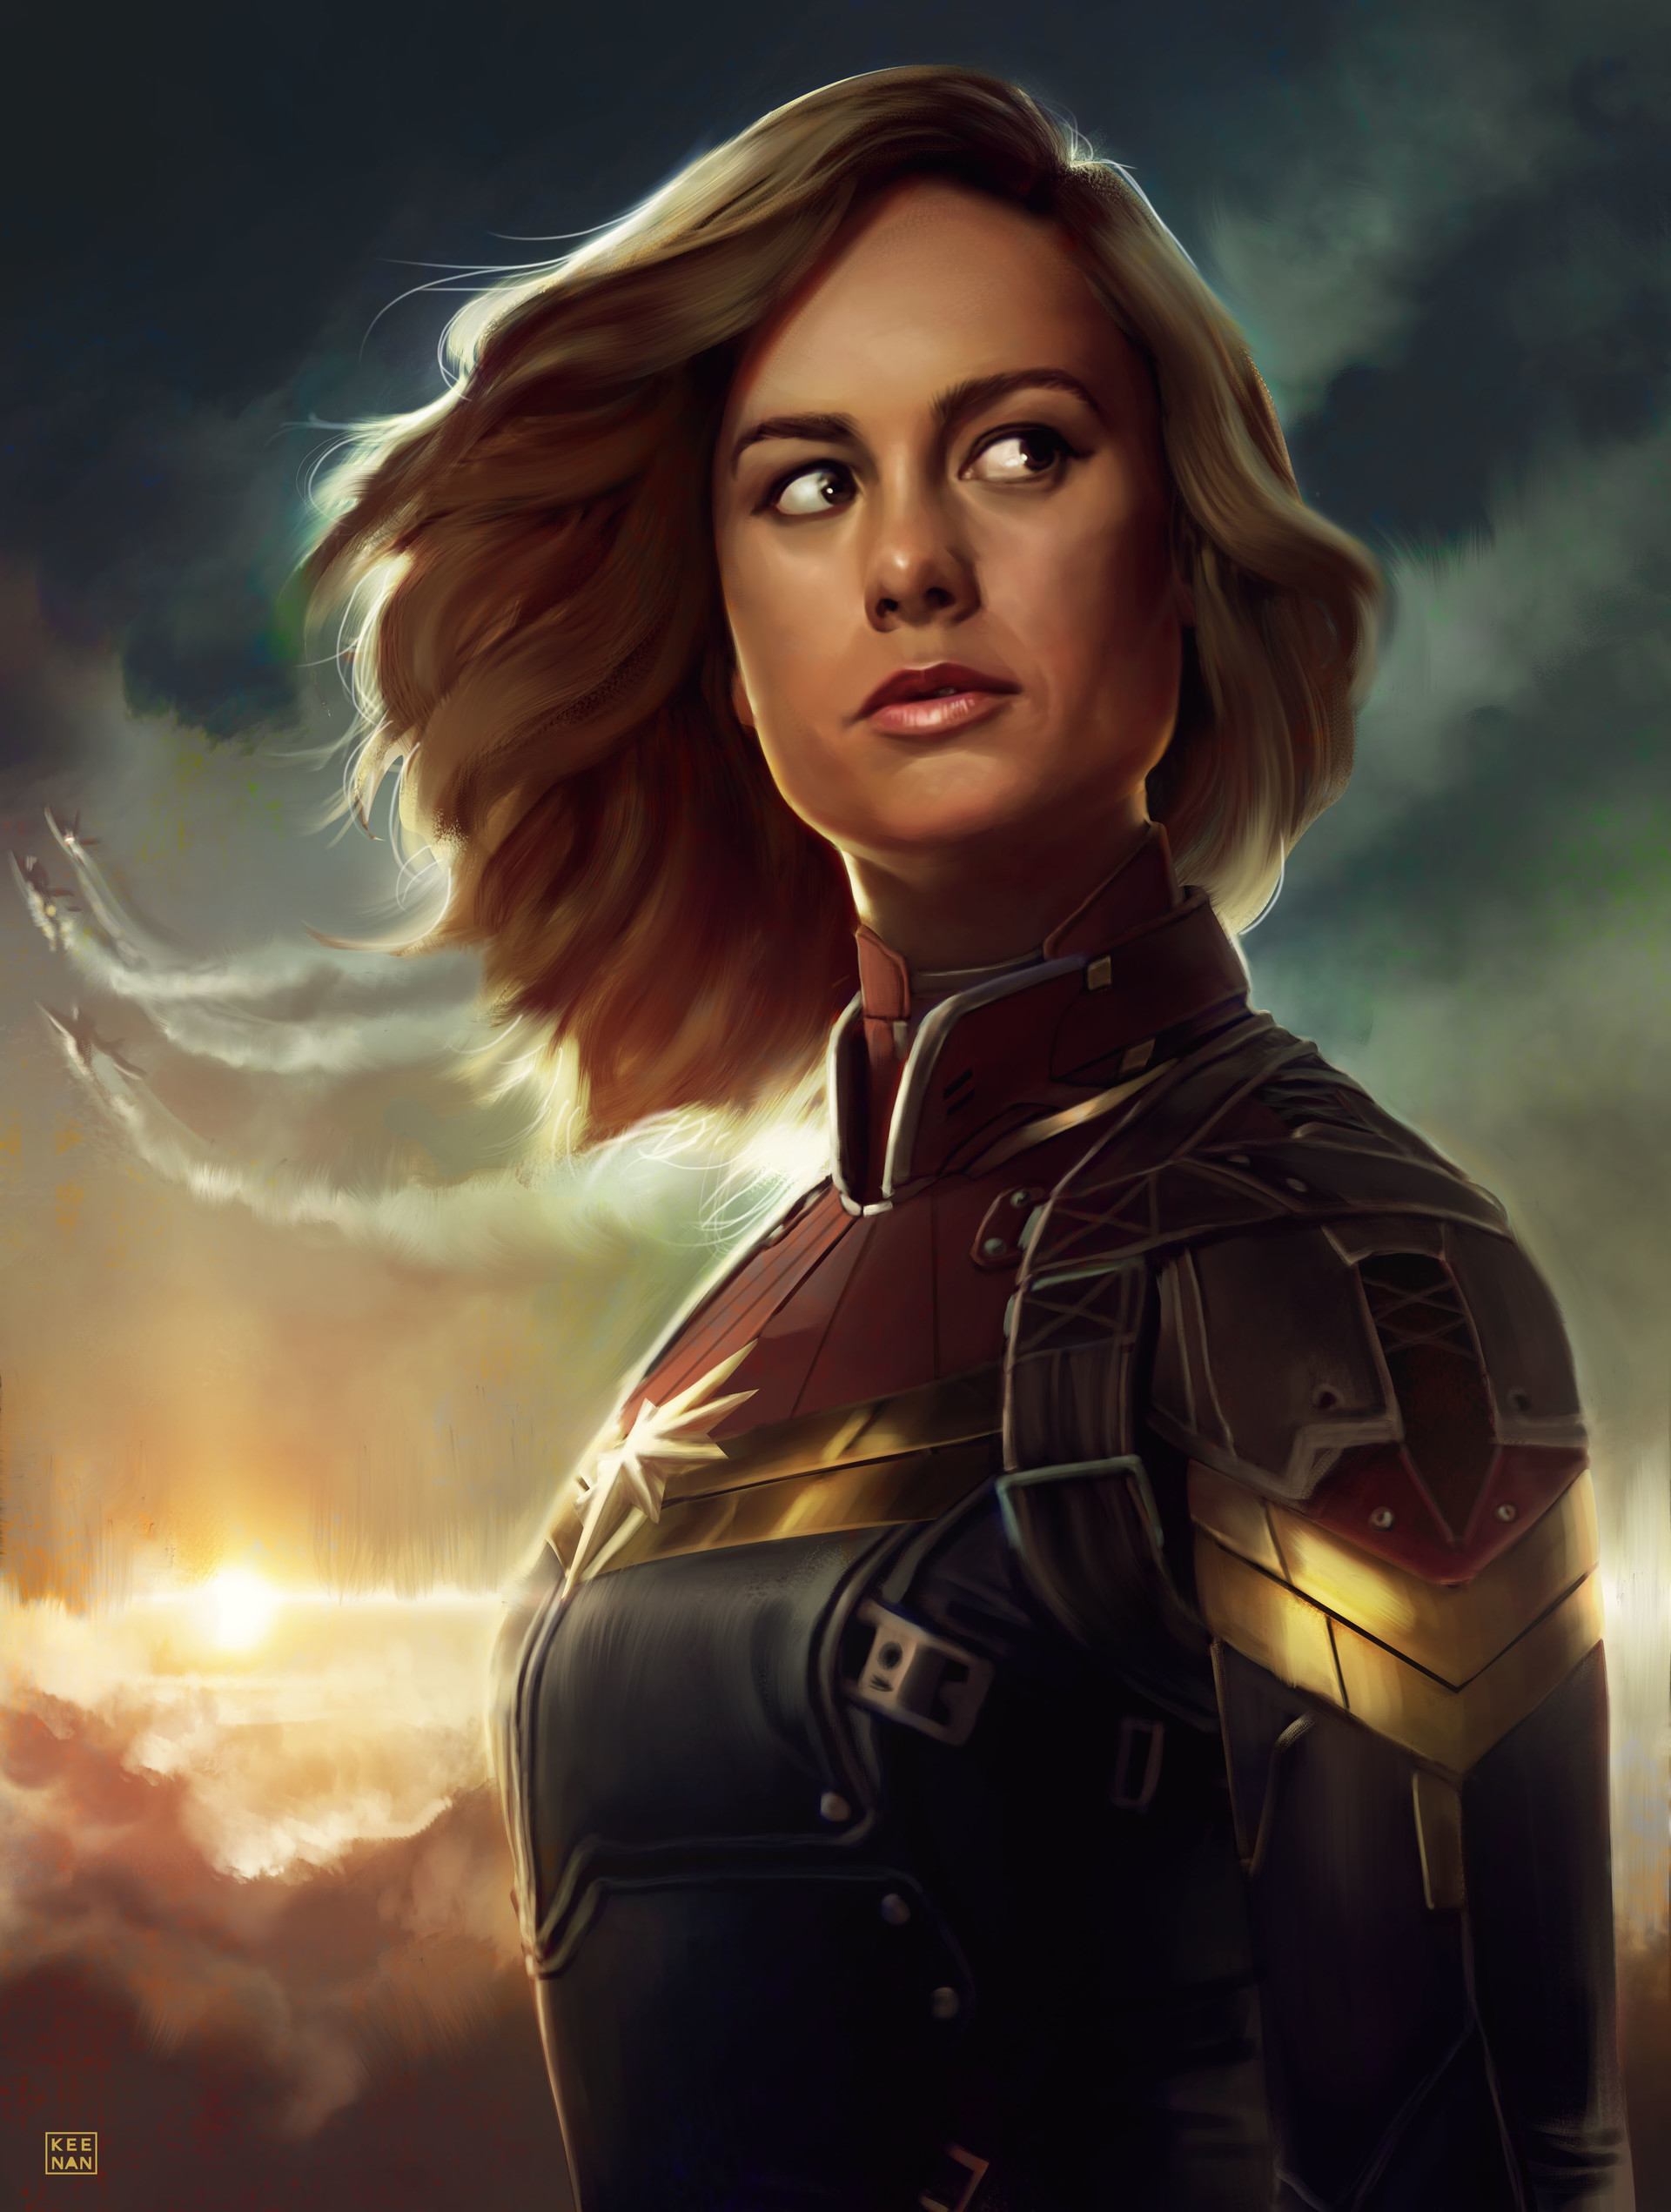 ArtStation - Captain Marvel Brie Larson, Dave Keenan